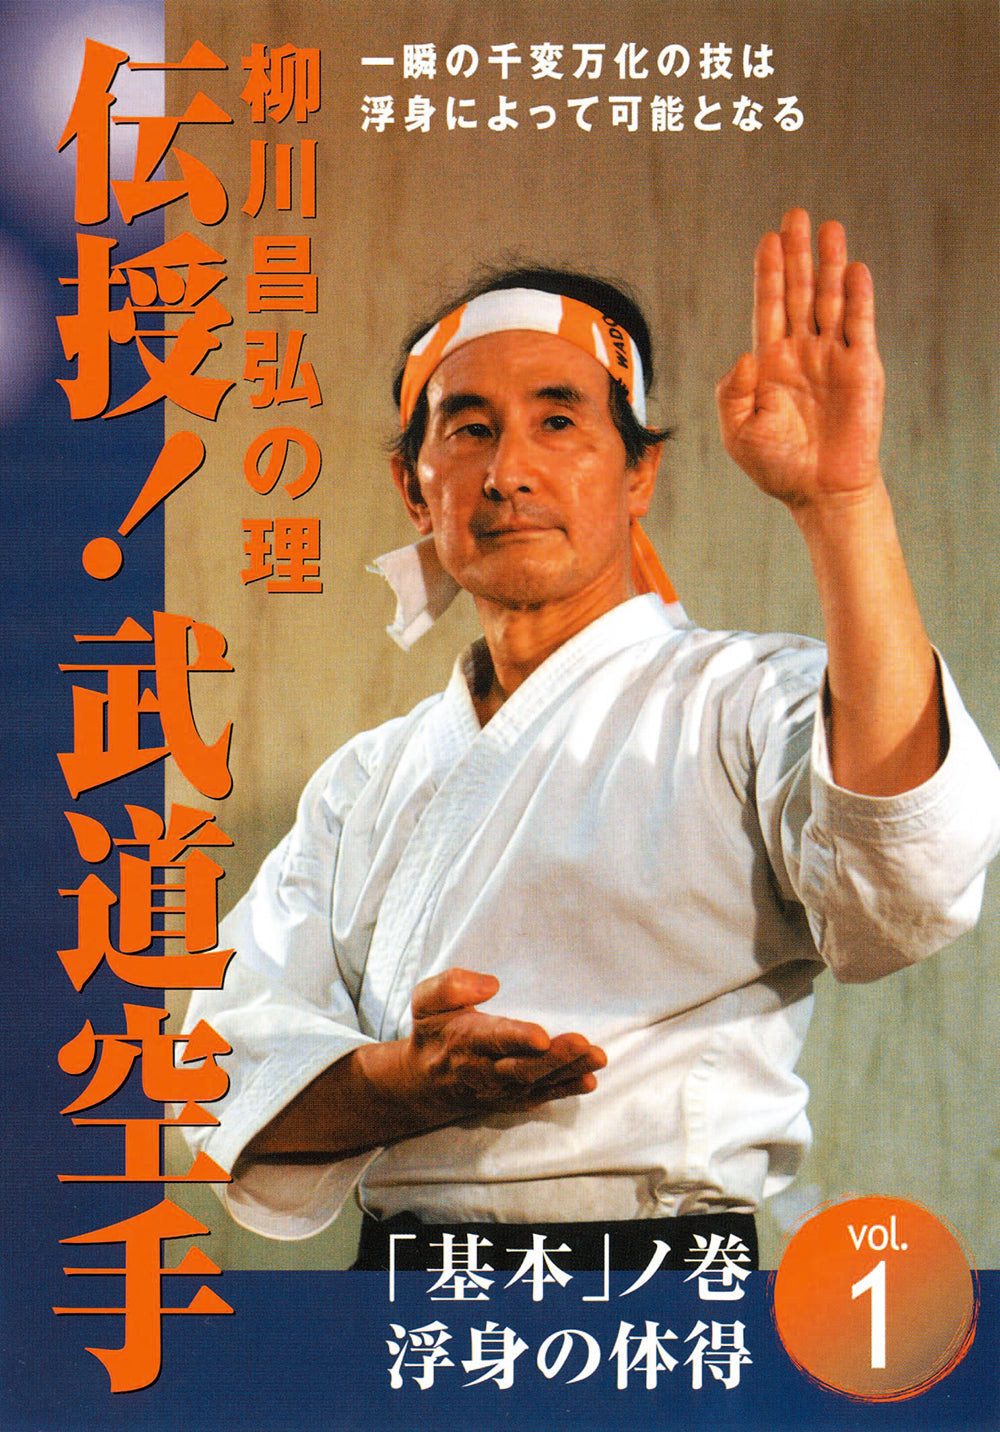 Basic Budo Karate DVD by Masahiro Yanagawa